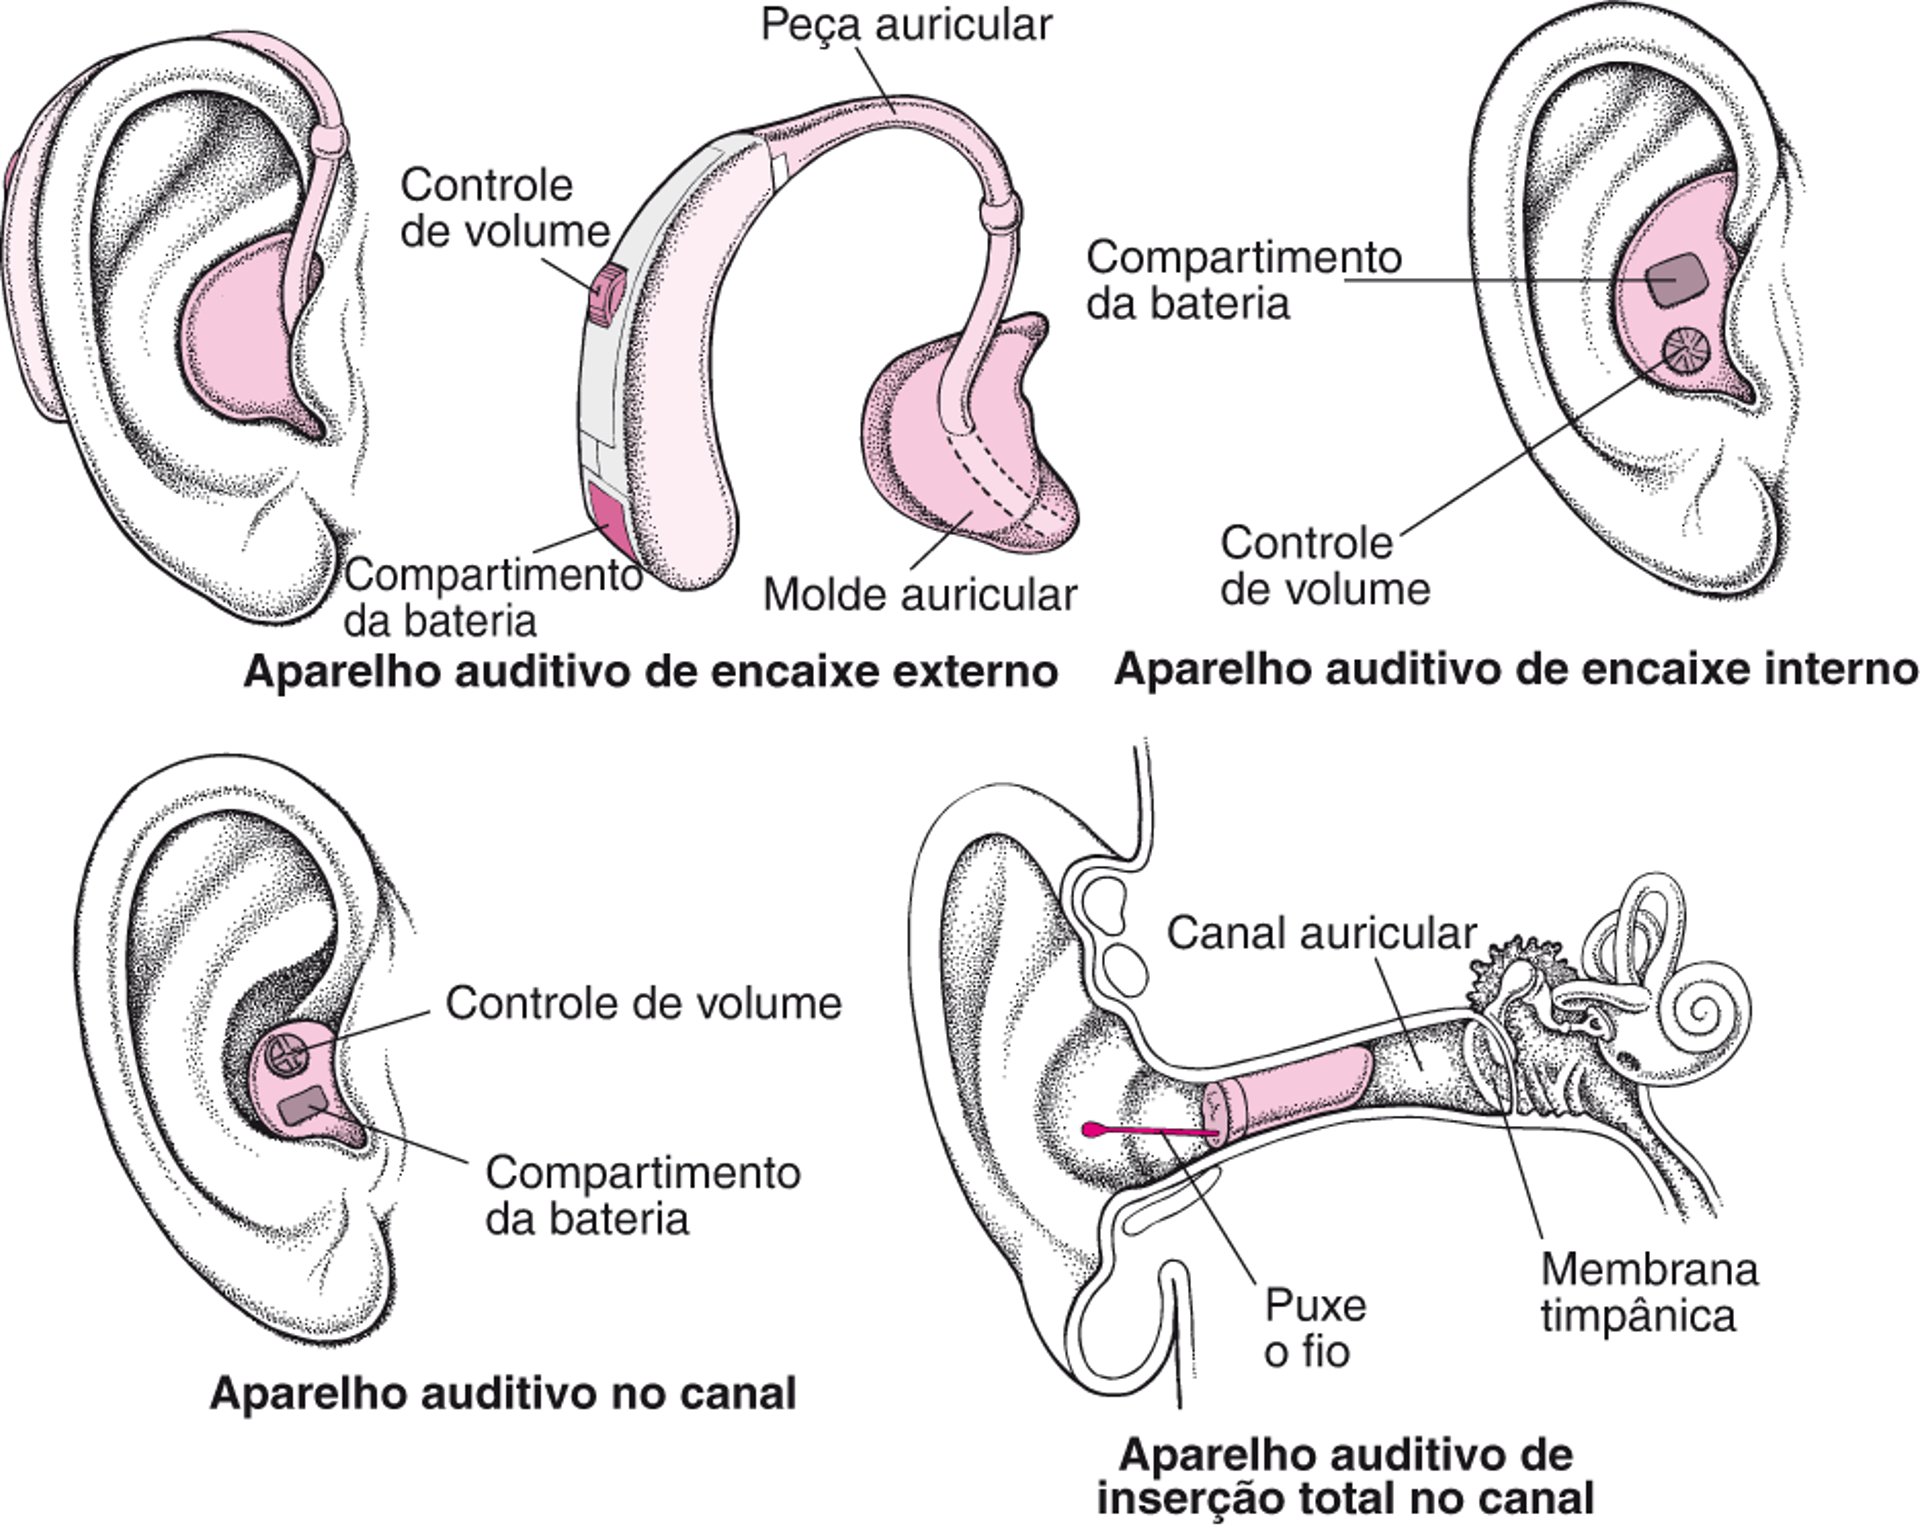 Aparelhos auditivos: Amplificando o som